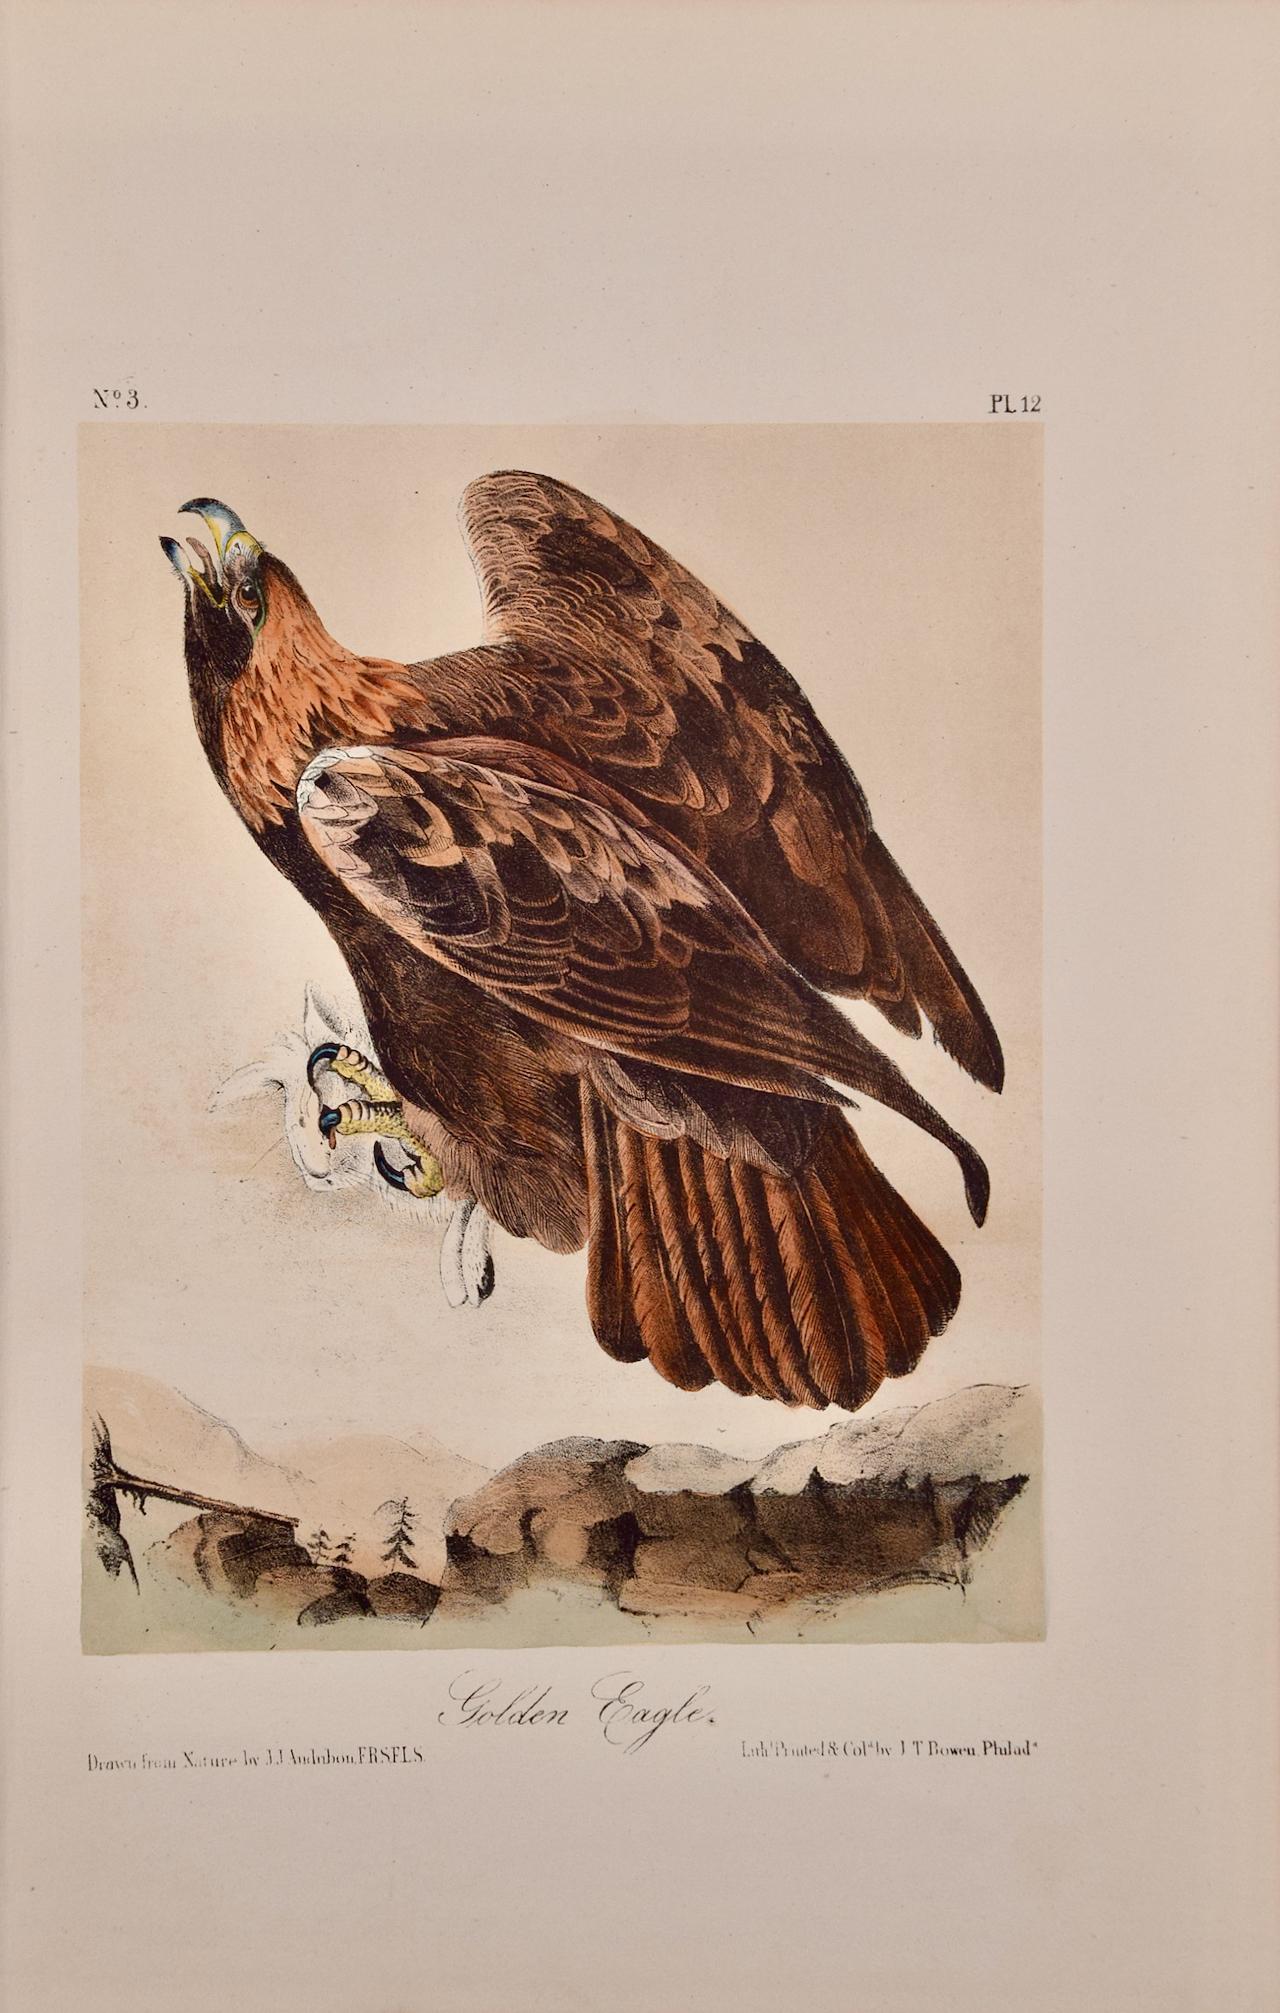 Landscape Print John James Audubon - Oiseau doré : lithographie originale d'Audubon du 19e siècle colorée à la main